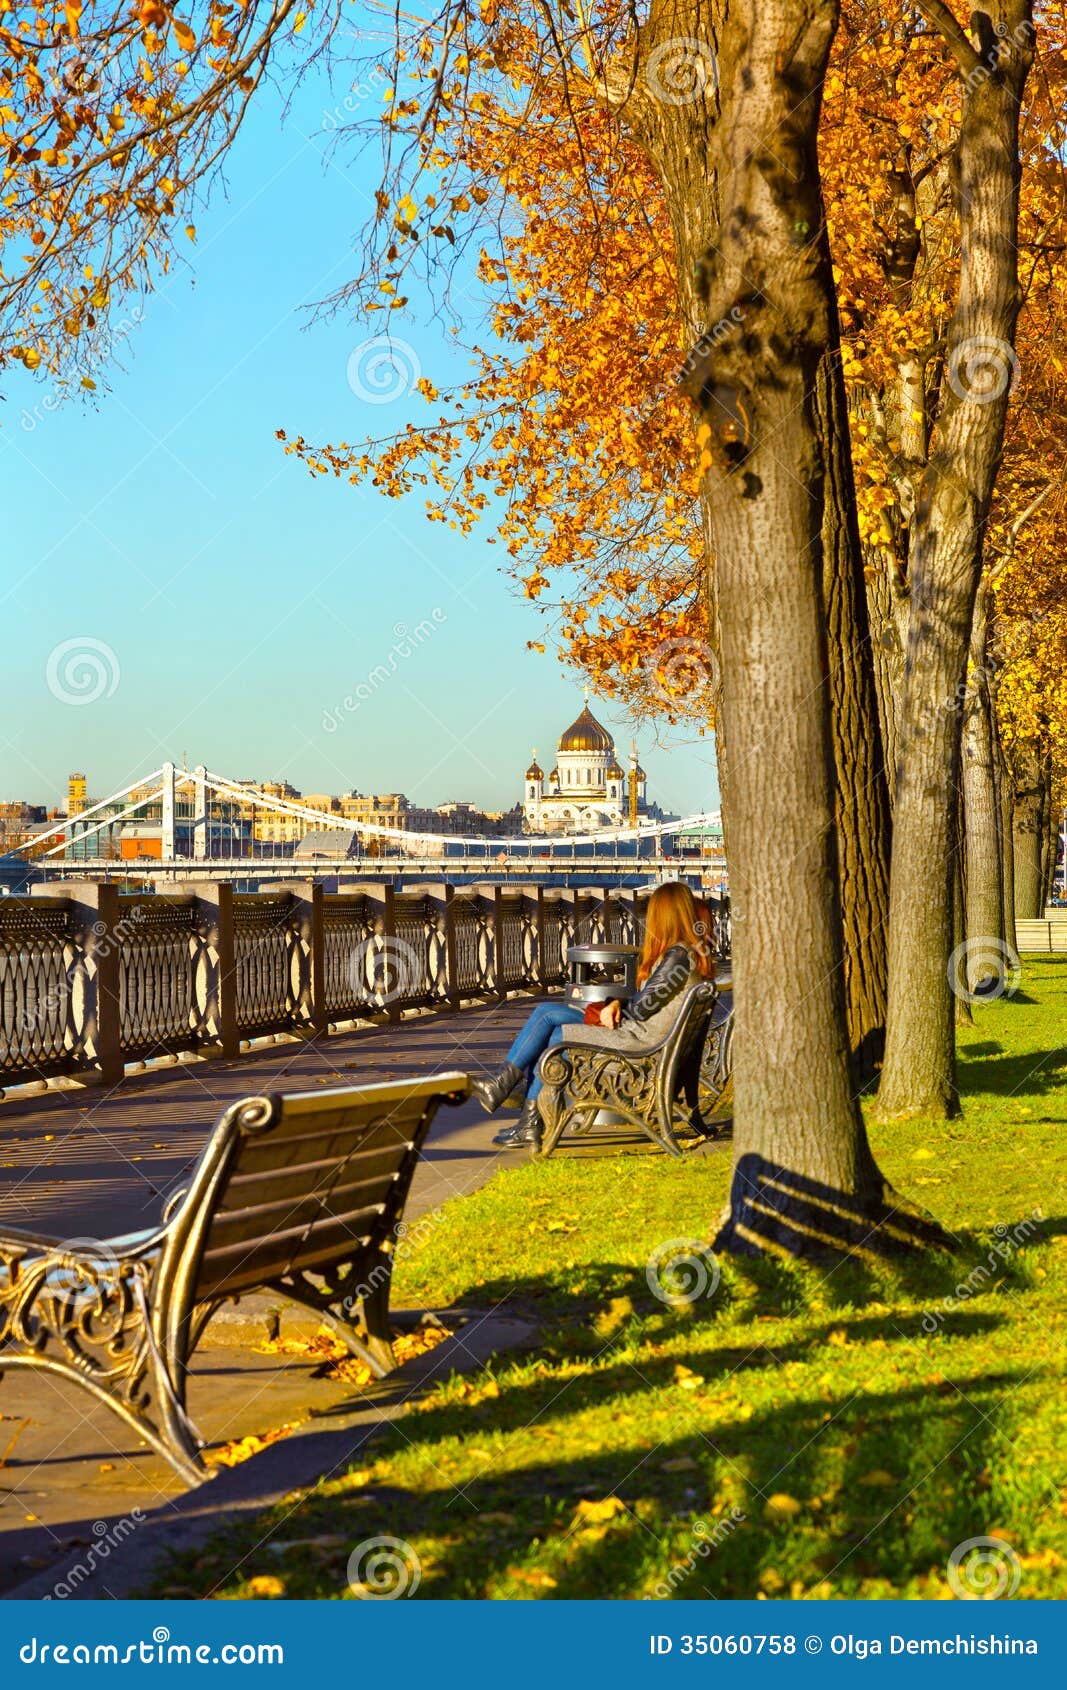 俄罗斯最美的园林秋色图片素材_免费下载_jpg图片格式_VRF高清图片501083878_摄图网